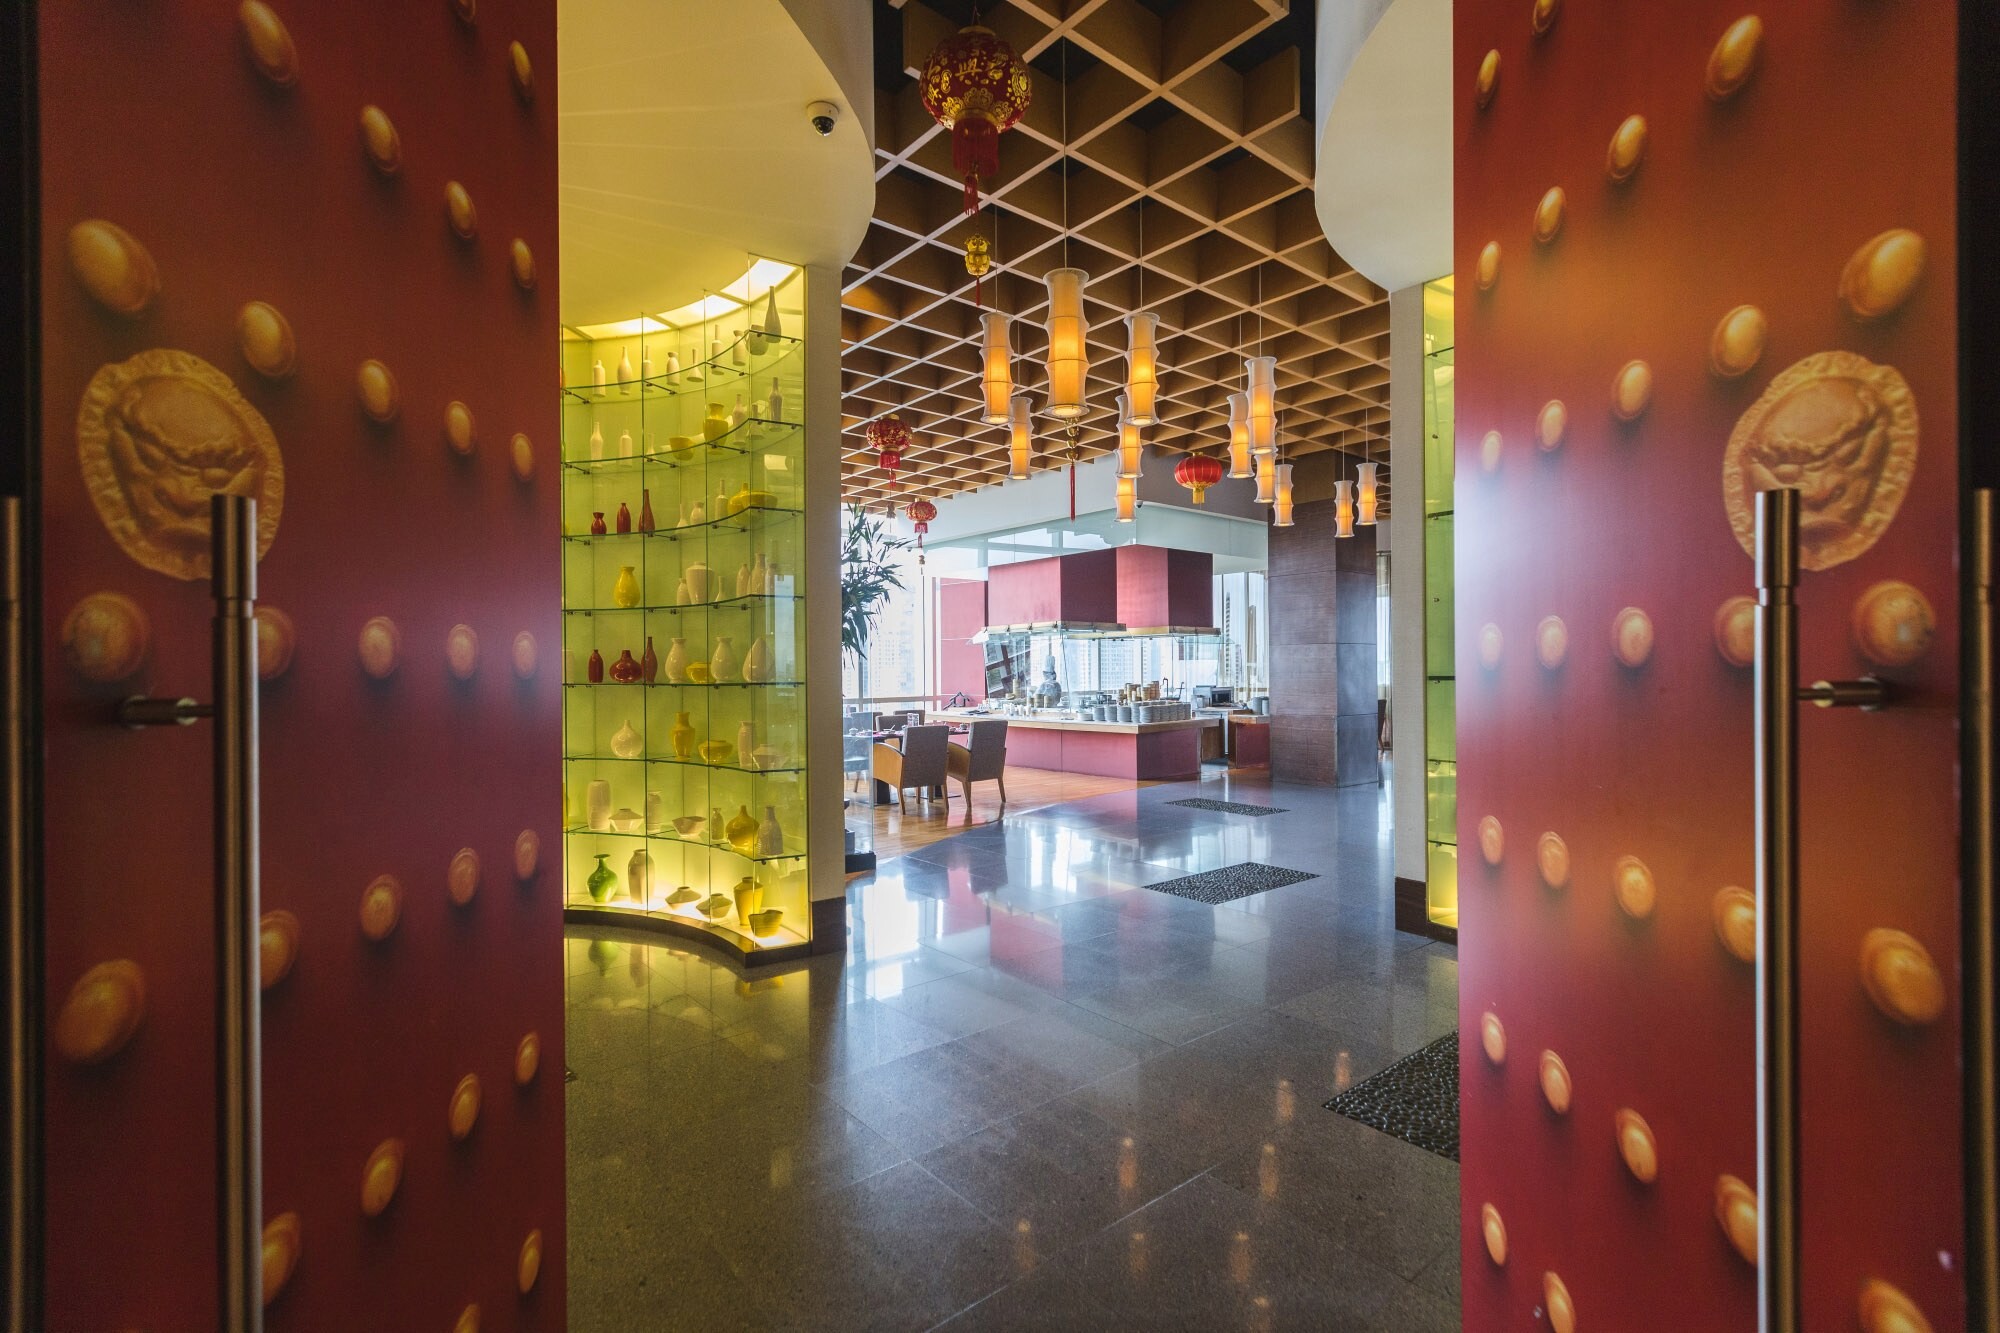 อาหารจีนชั้นเลิศ เมนูหอยเป่าฮื้อระดับจักรพรรดิ ณ ห้องอาหารจีนไดนาสตี้, โรงแรมเซ็นทาราแกรนด์ฯ เซ็นทรัลเวิลด์